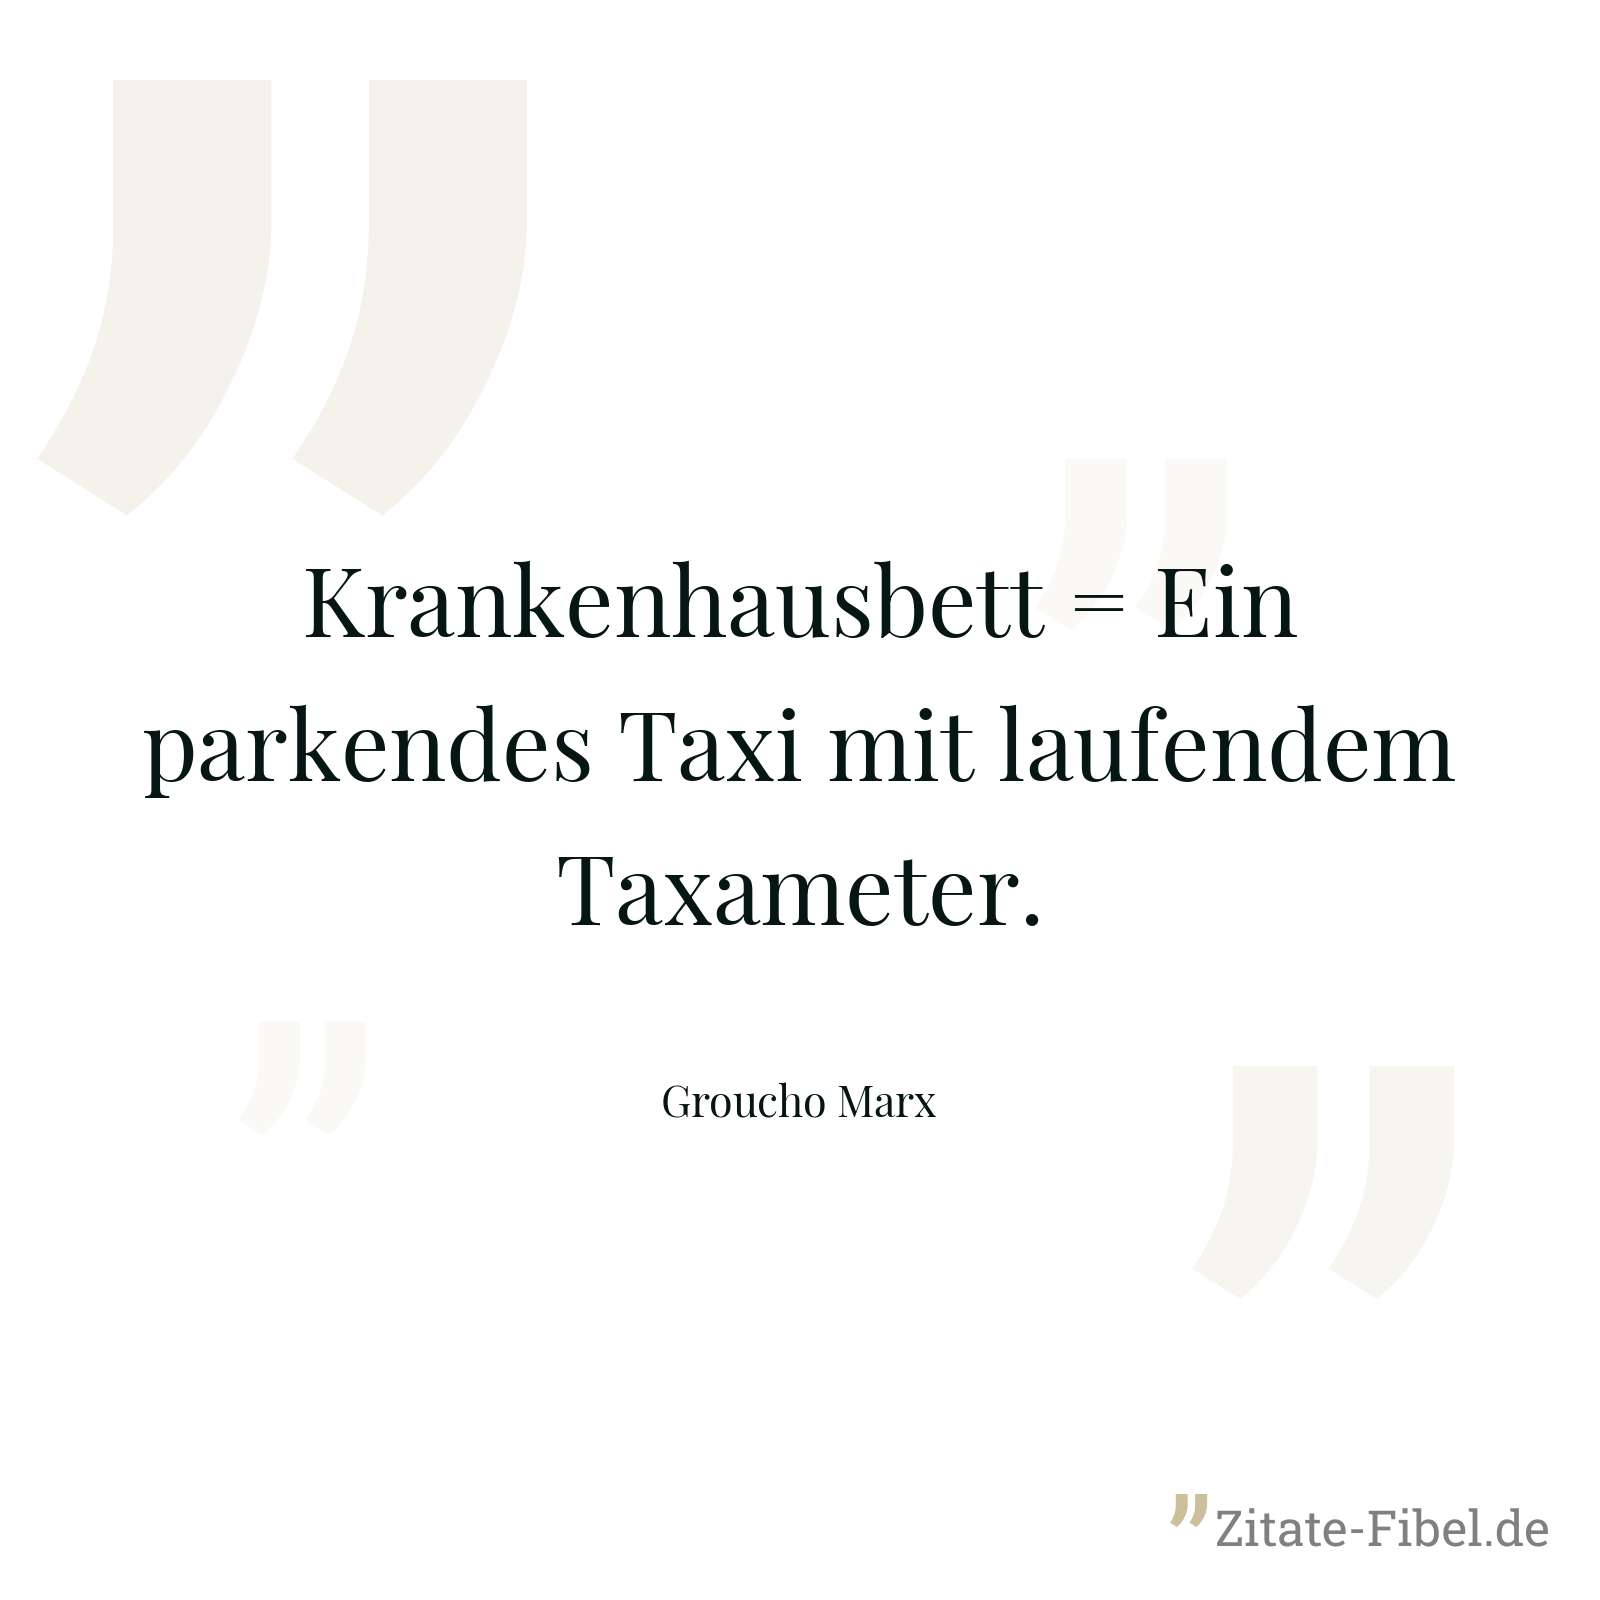 Krankenhausbett = Ein parkendes Taxi mit laufendem Taxameter. - Groucho Marx